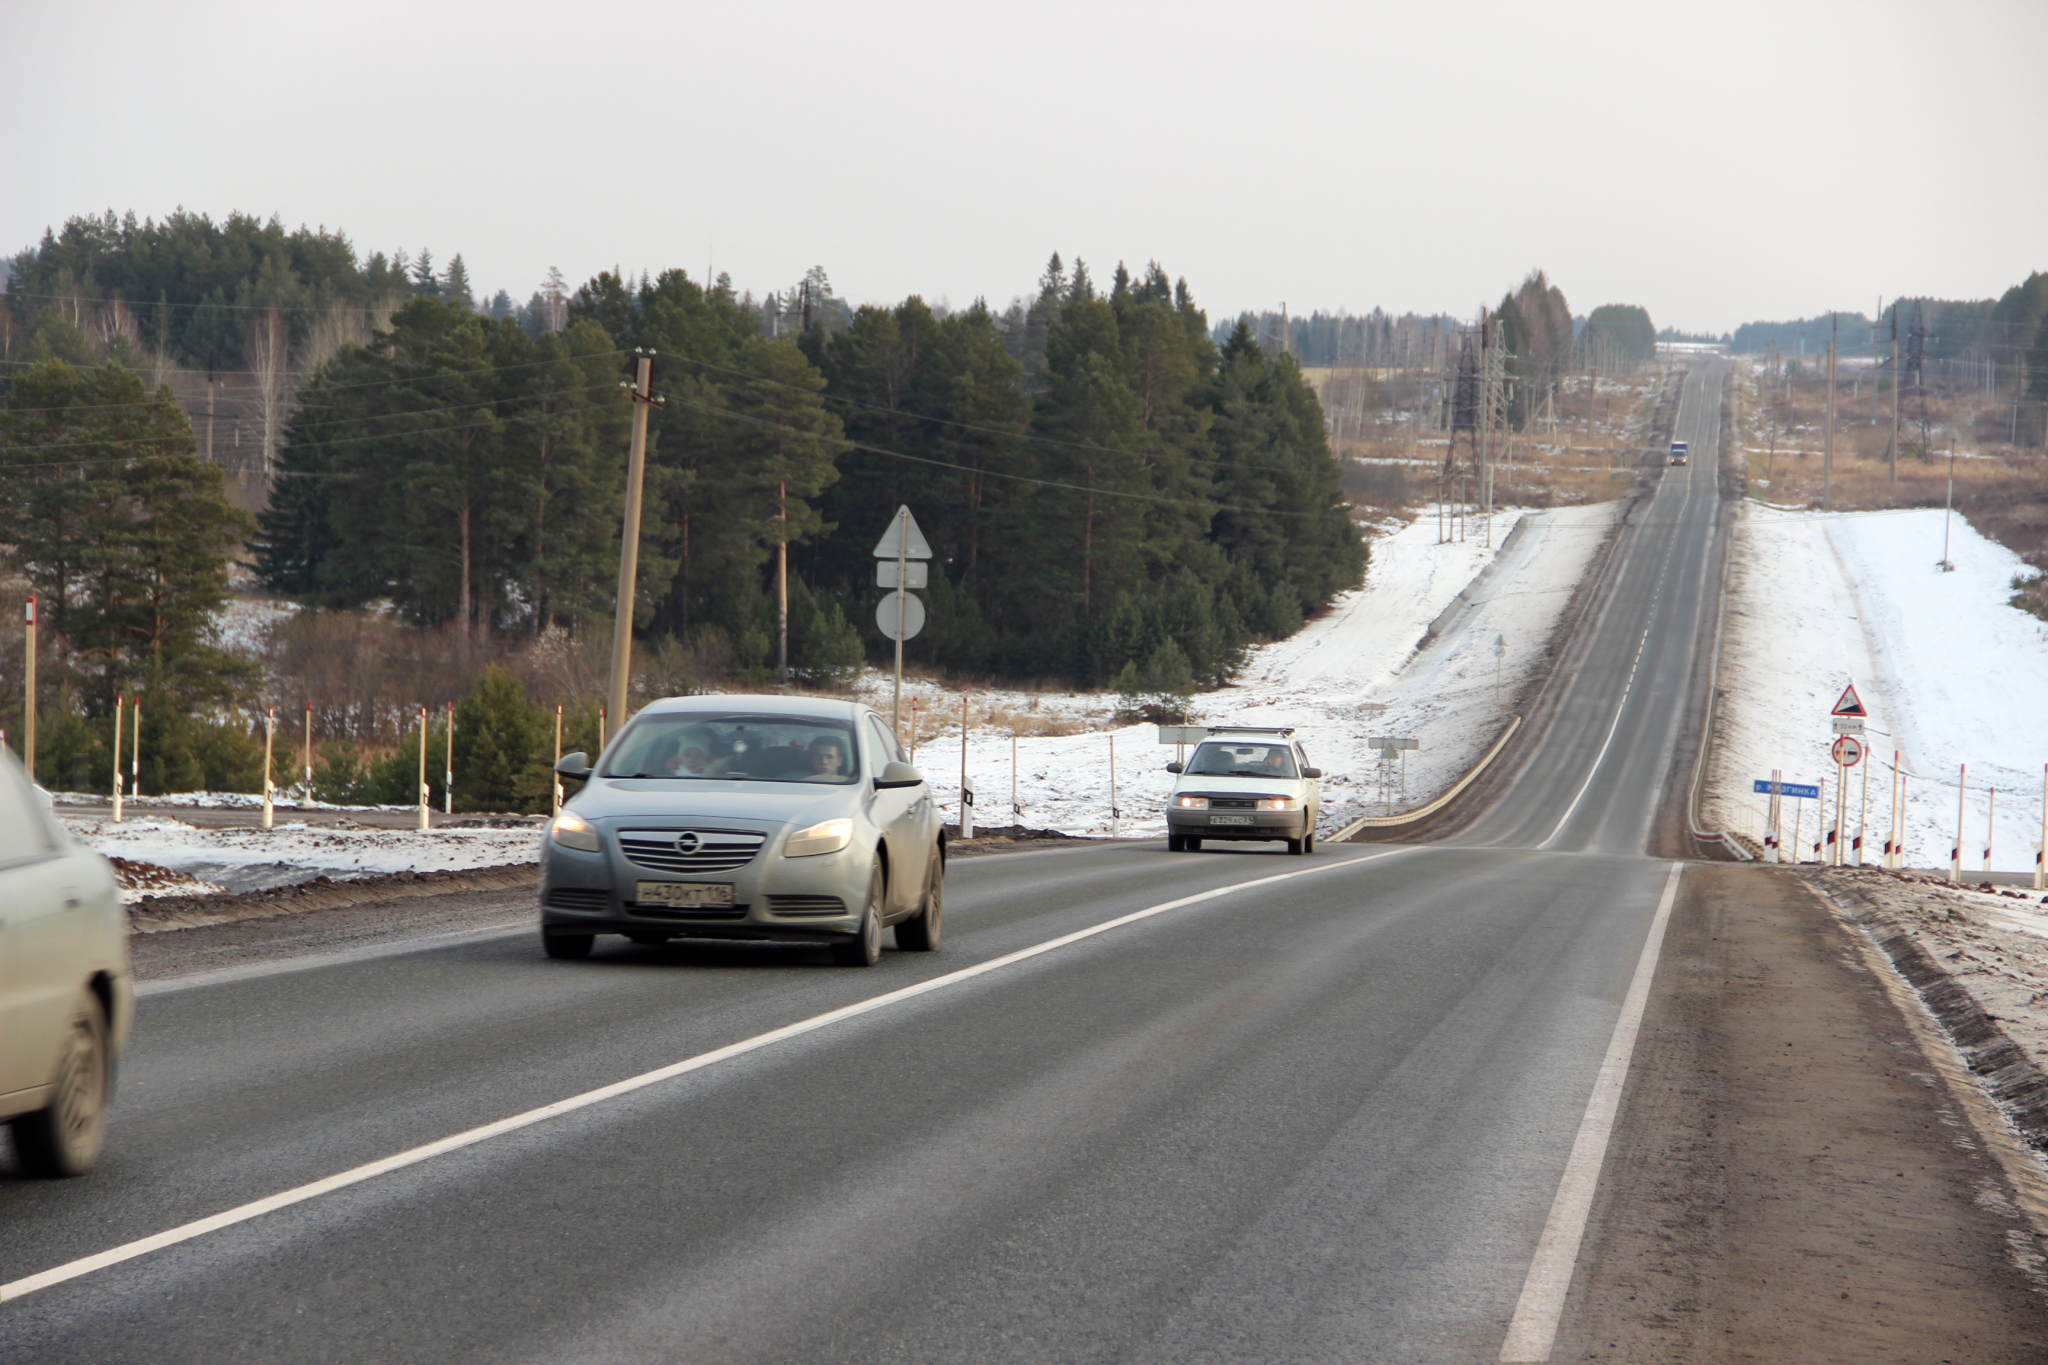 Движение по трассе М-7 в районе Дзержинска поменялось